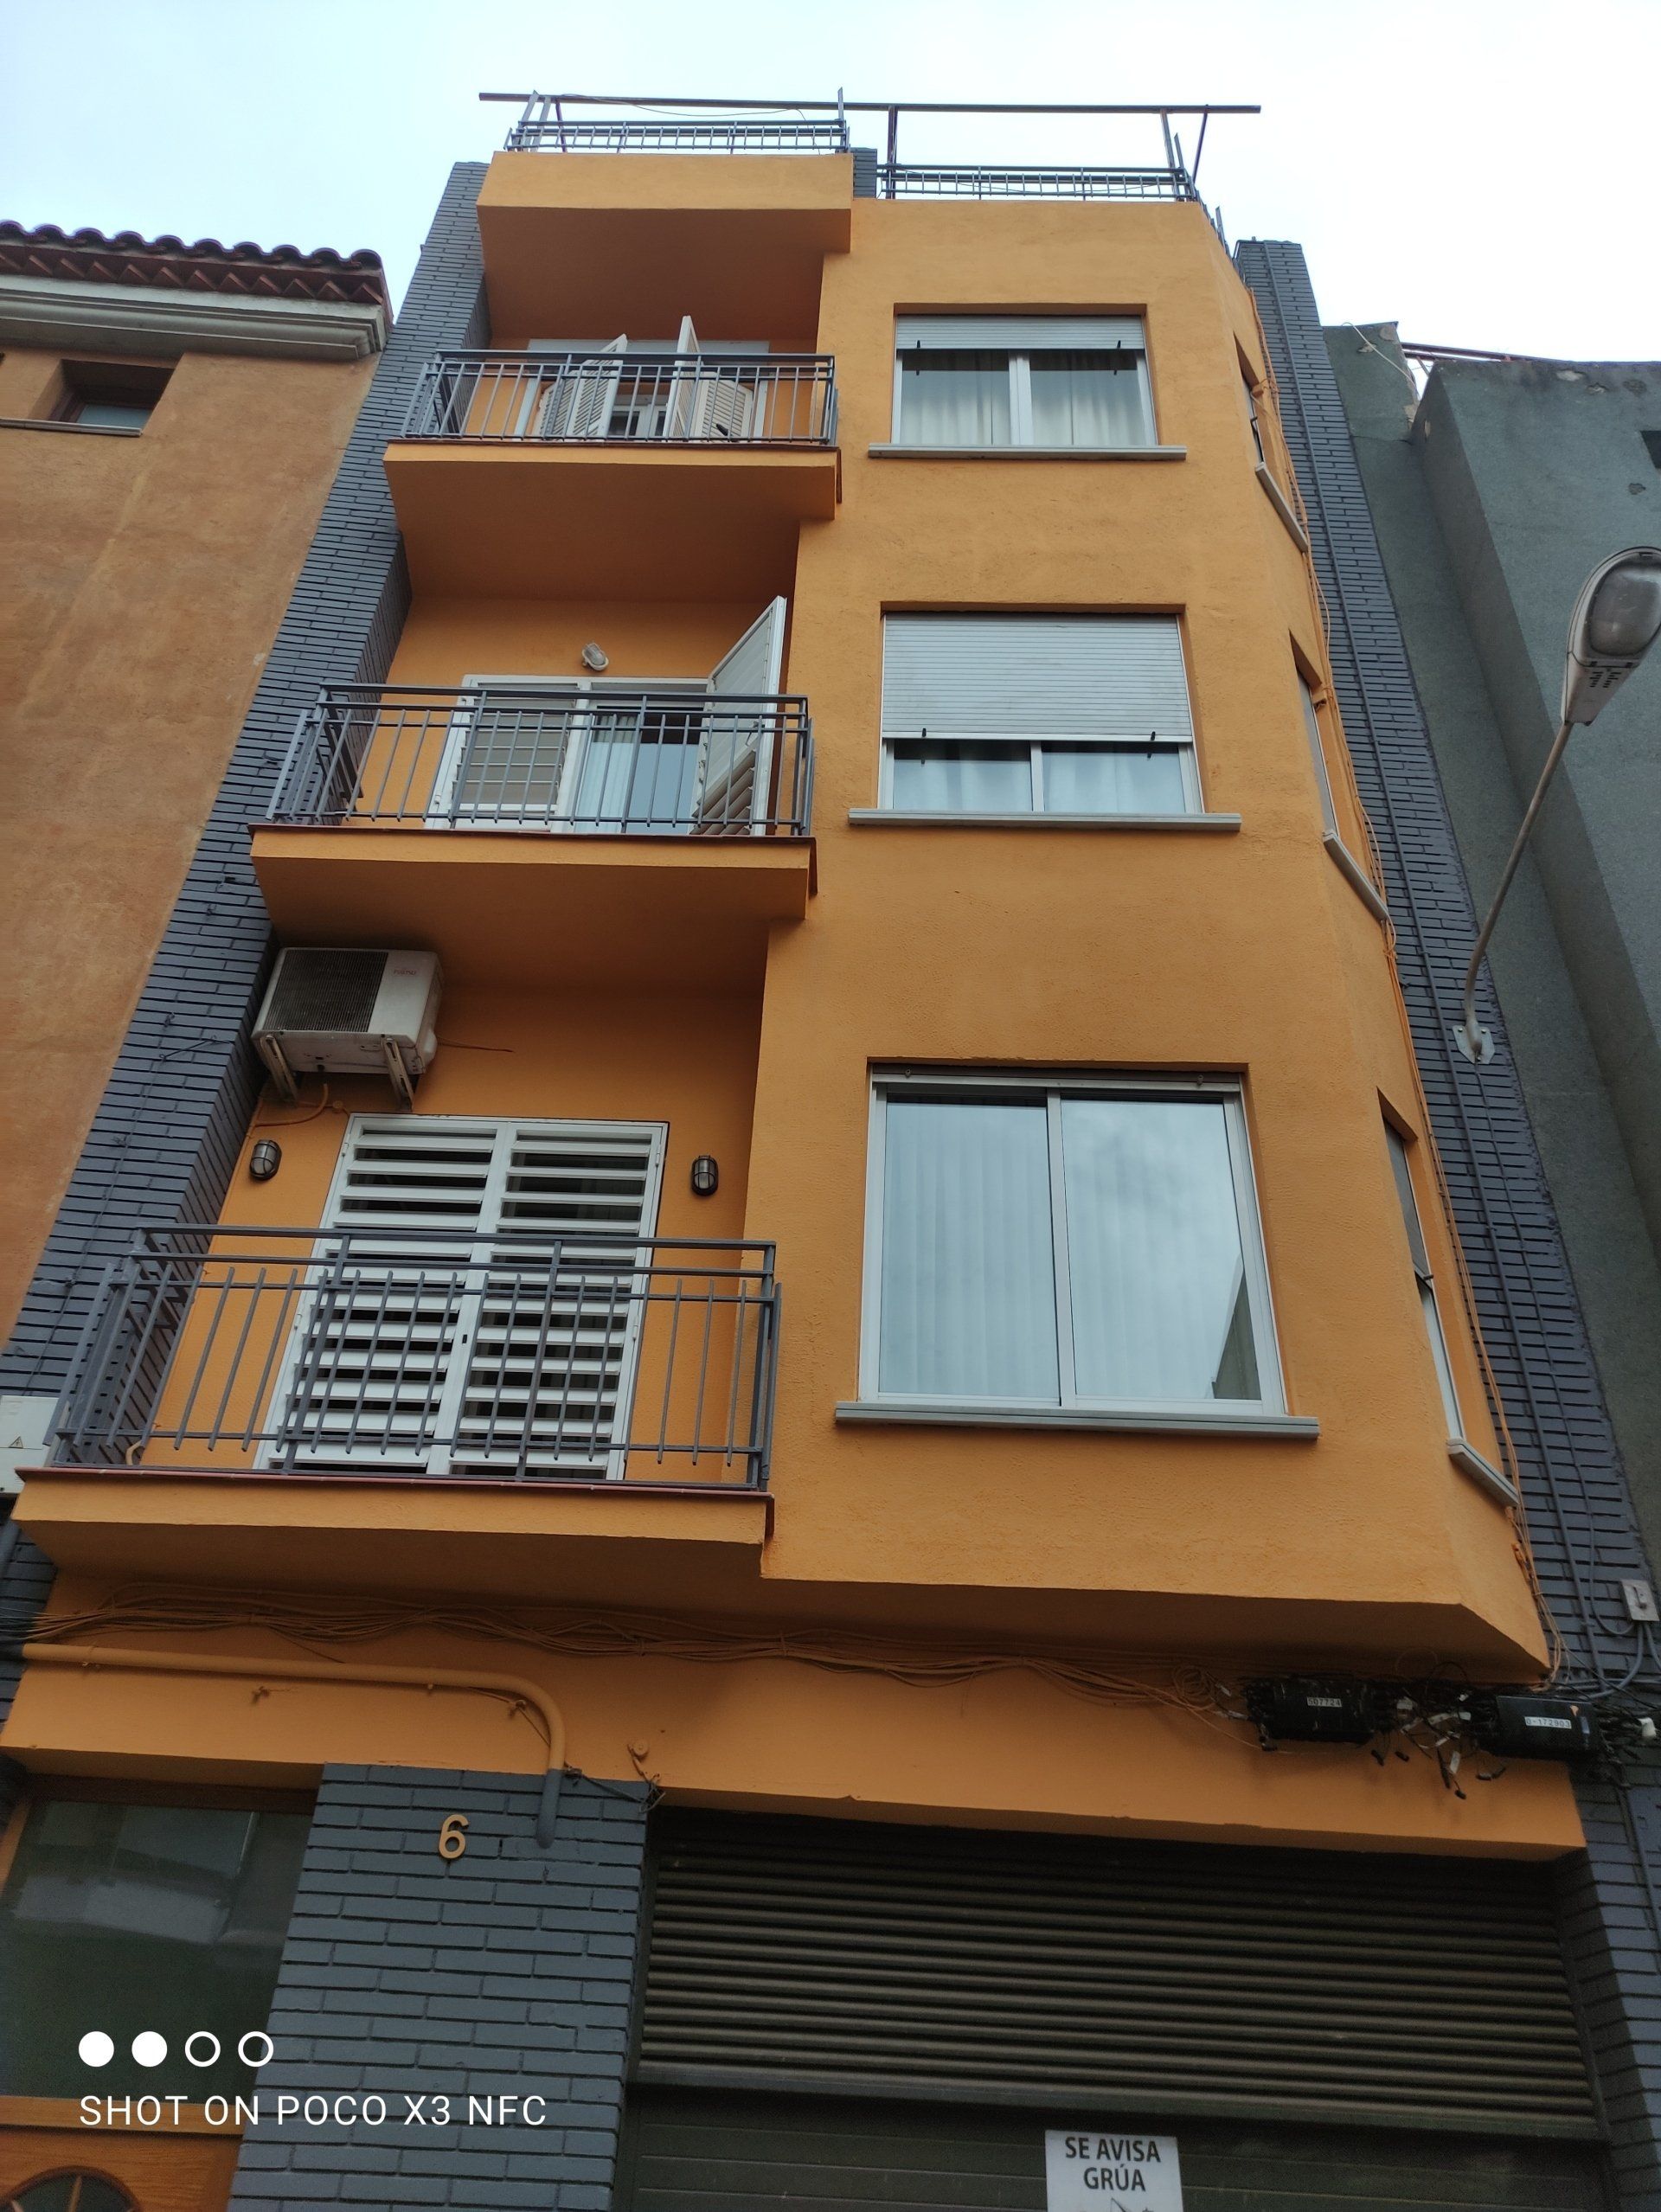 Restauración y rehabilitación de fachadas en Santa Coloma de Gramenet.